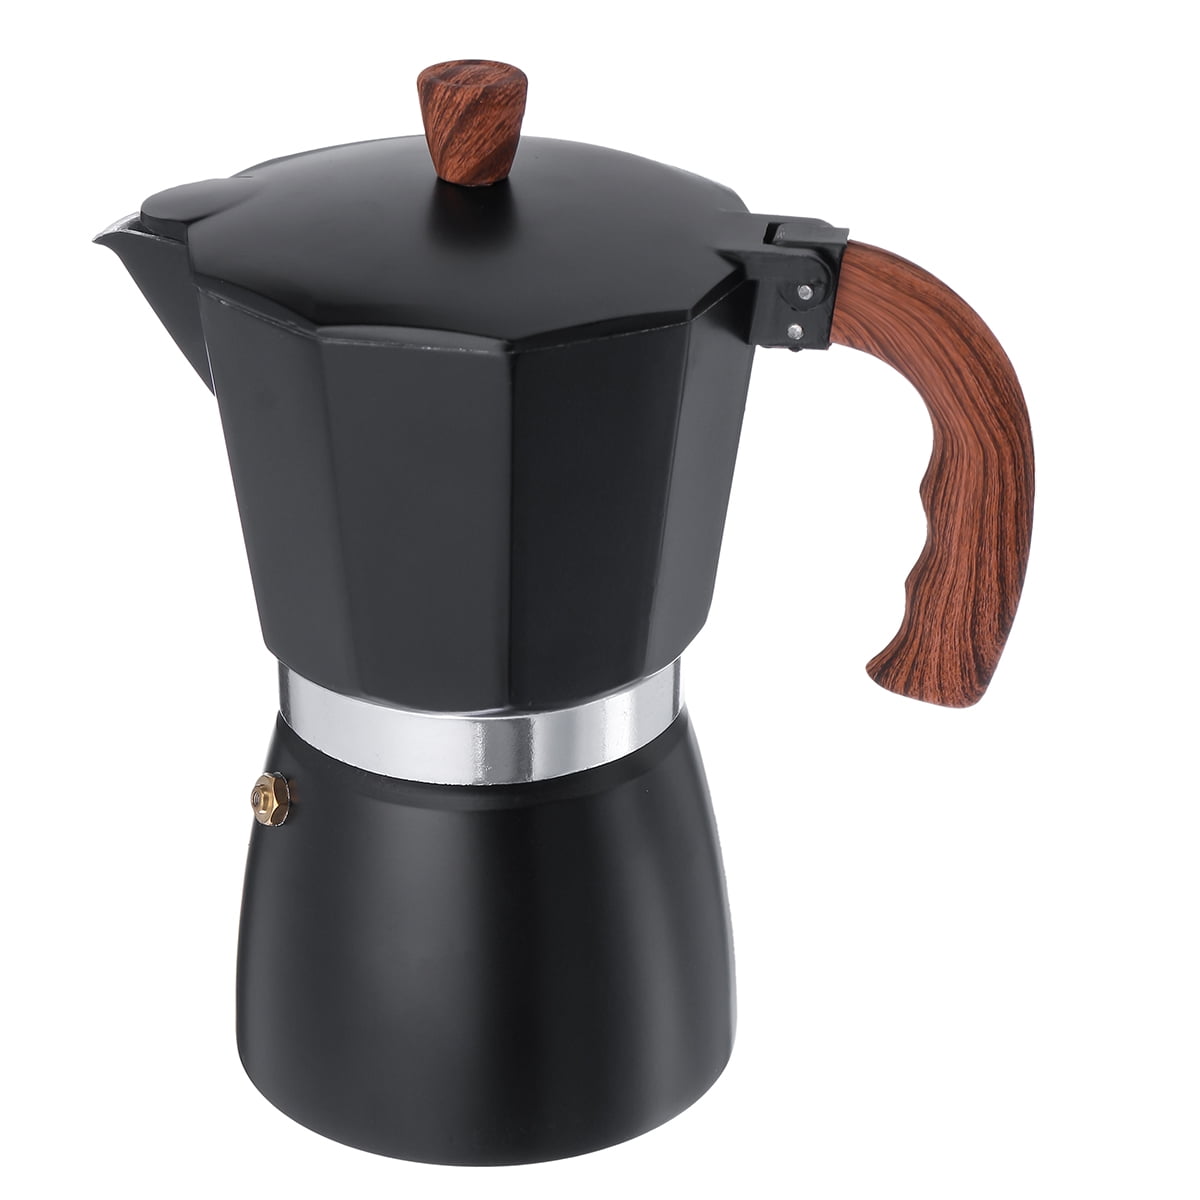 Aluminum Stove Top Espresso Coffee Maker Moka Pot Percolator 3 /6 Cup/150/300ML